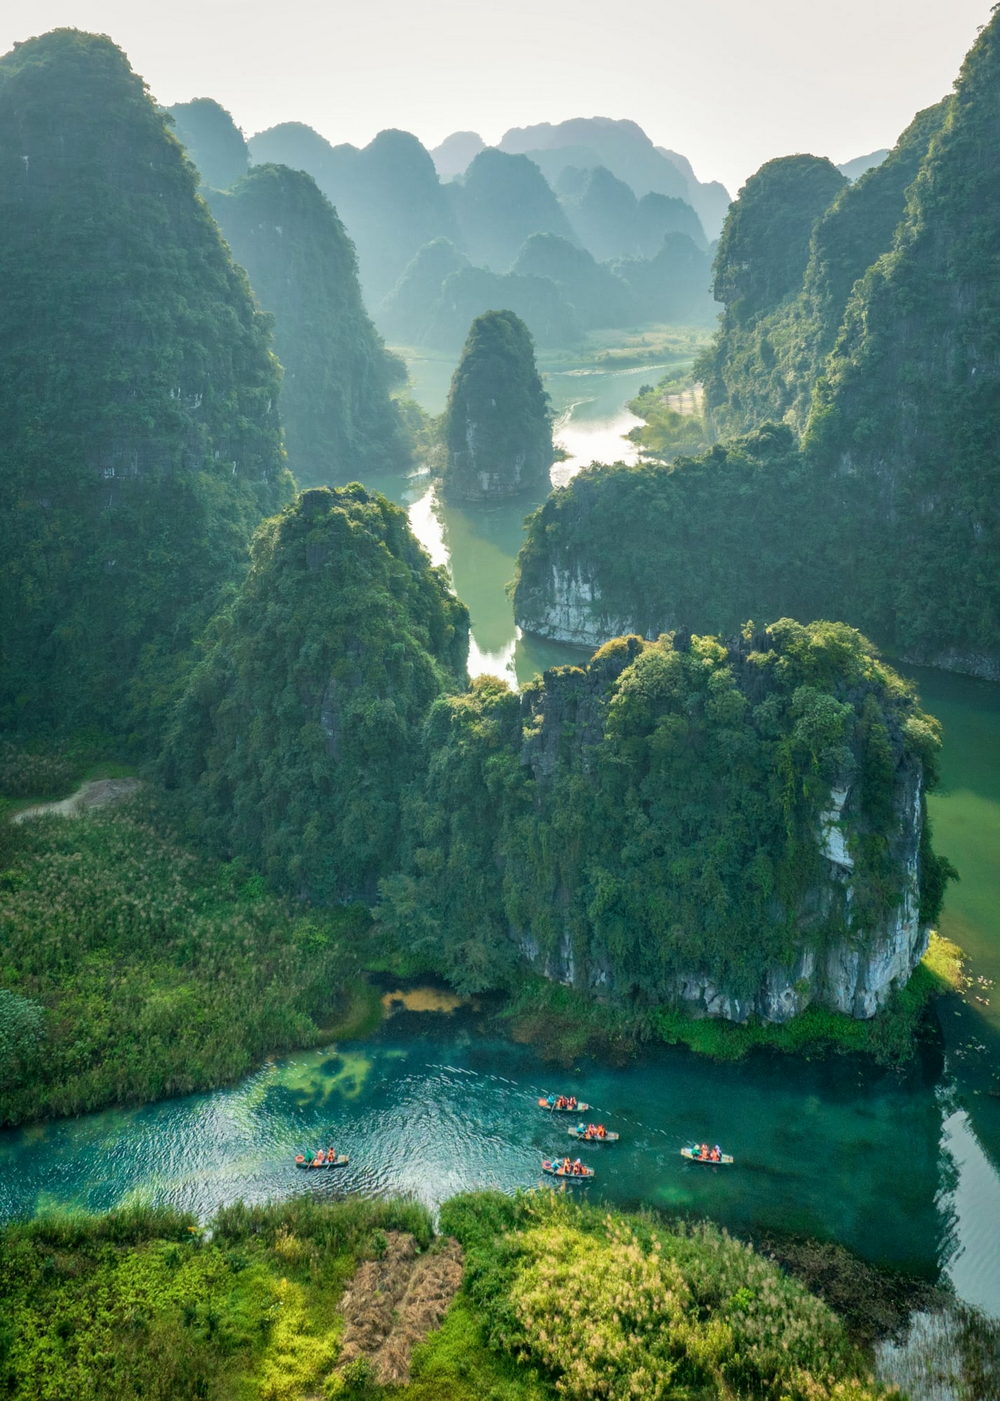 Impressionantes fotos aéreas da zona rural do Vietnã por Pham Huy Trung